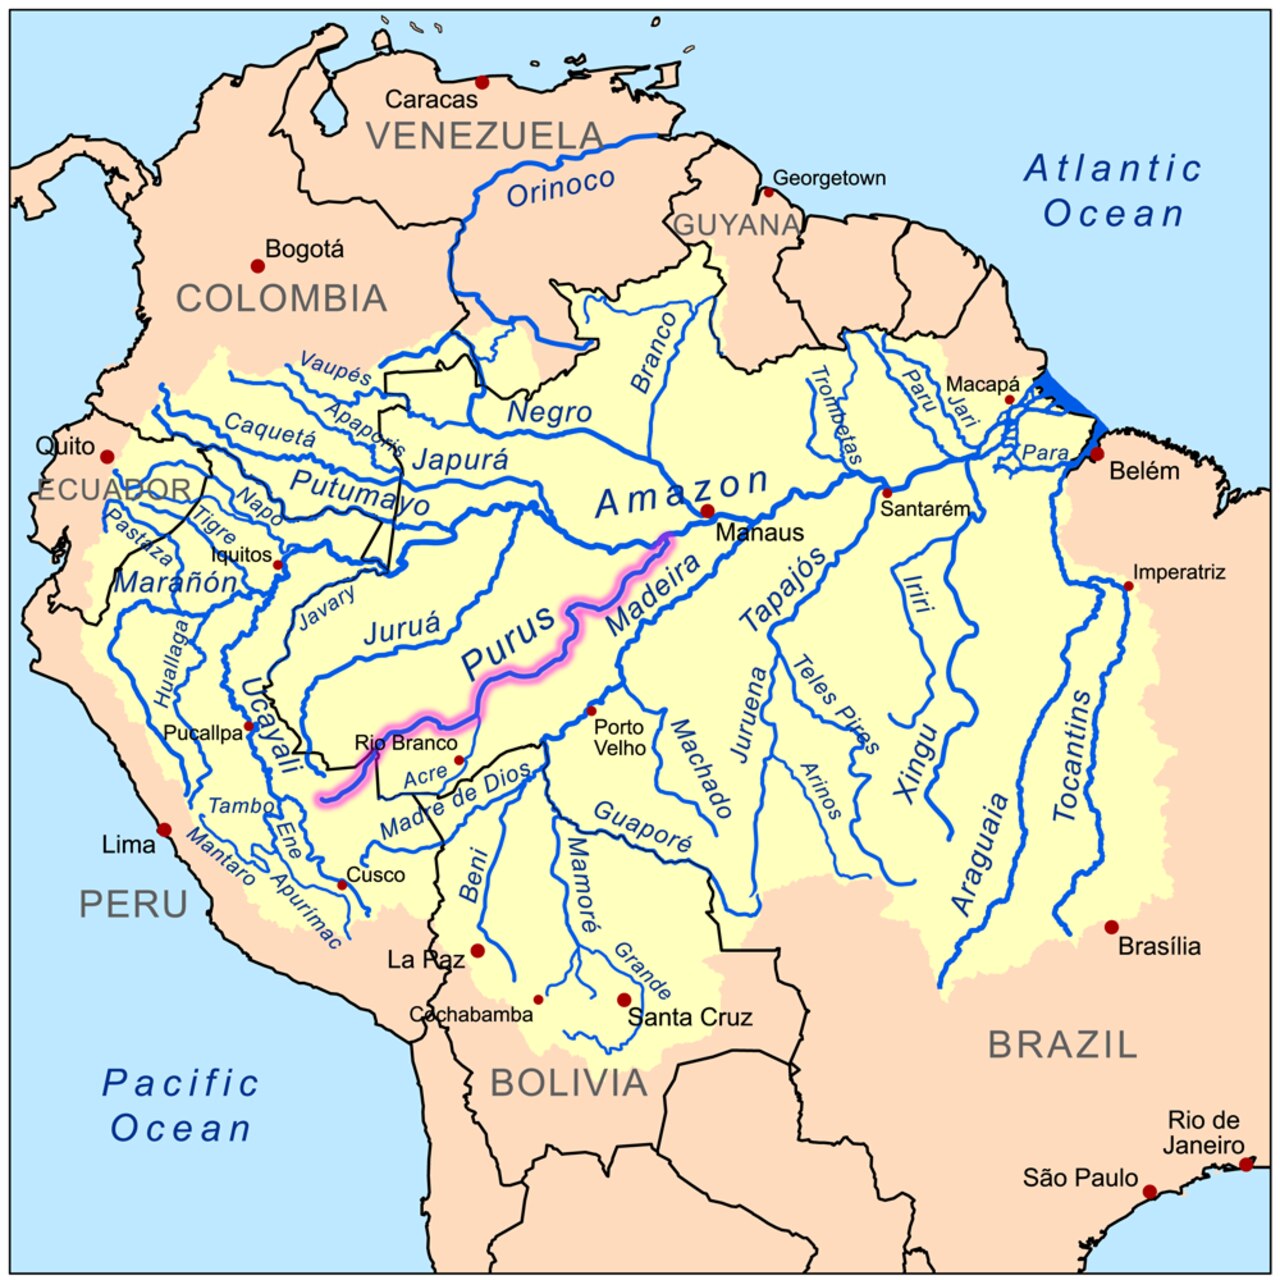 الذكاء الاصطناعي: نهر بوروس هو نهر مهيب في أمريكا الجنوبية، يتدفق لمسافة 3.211 كيلومترًا باتجاه الشمال الشرقي ليصب أخيرًا في نهر الأمازون